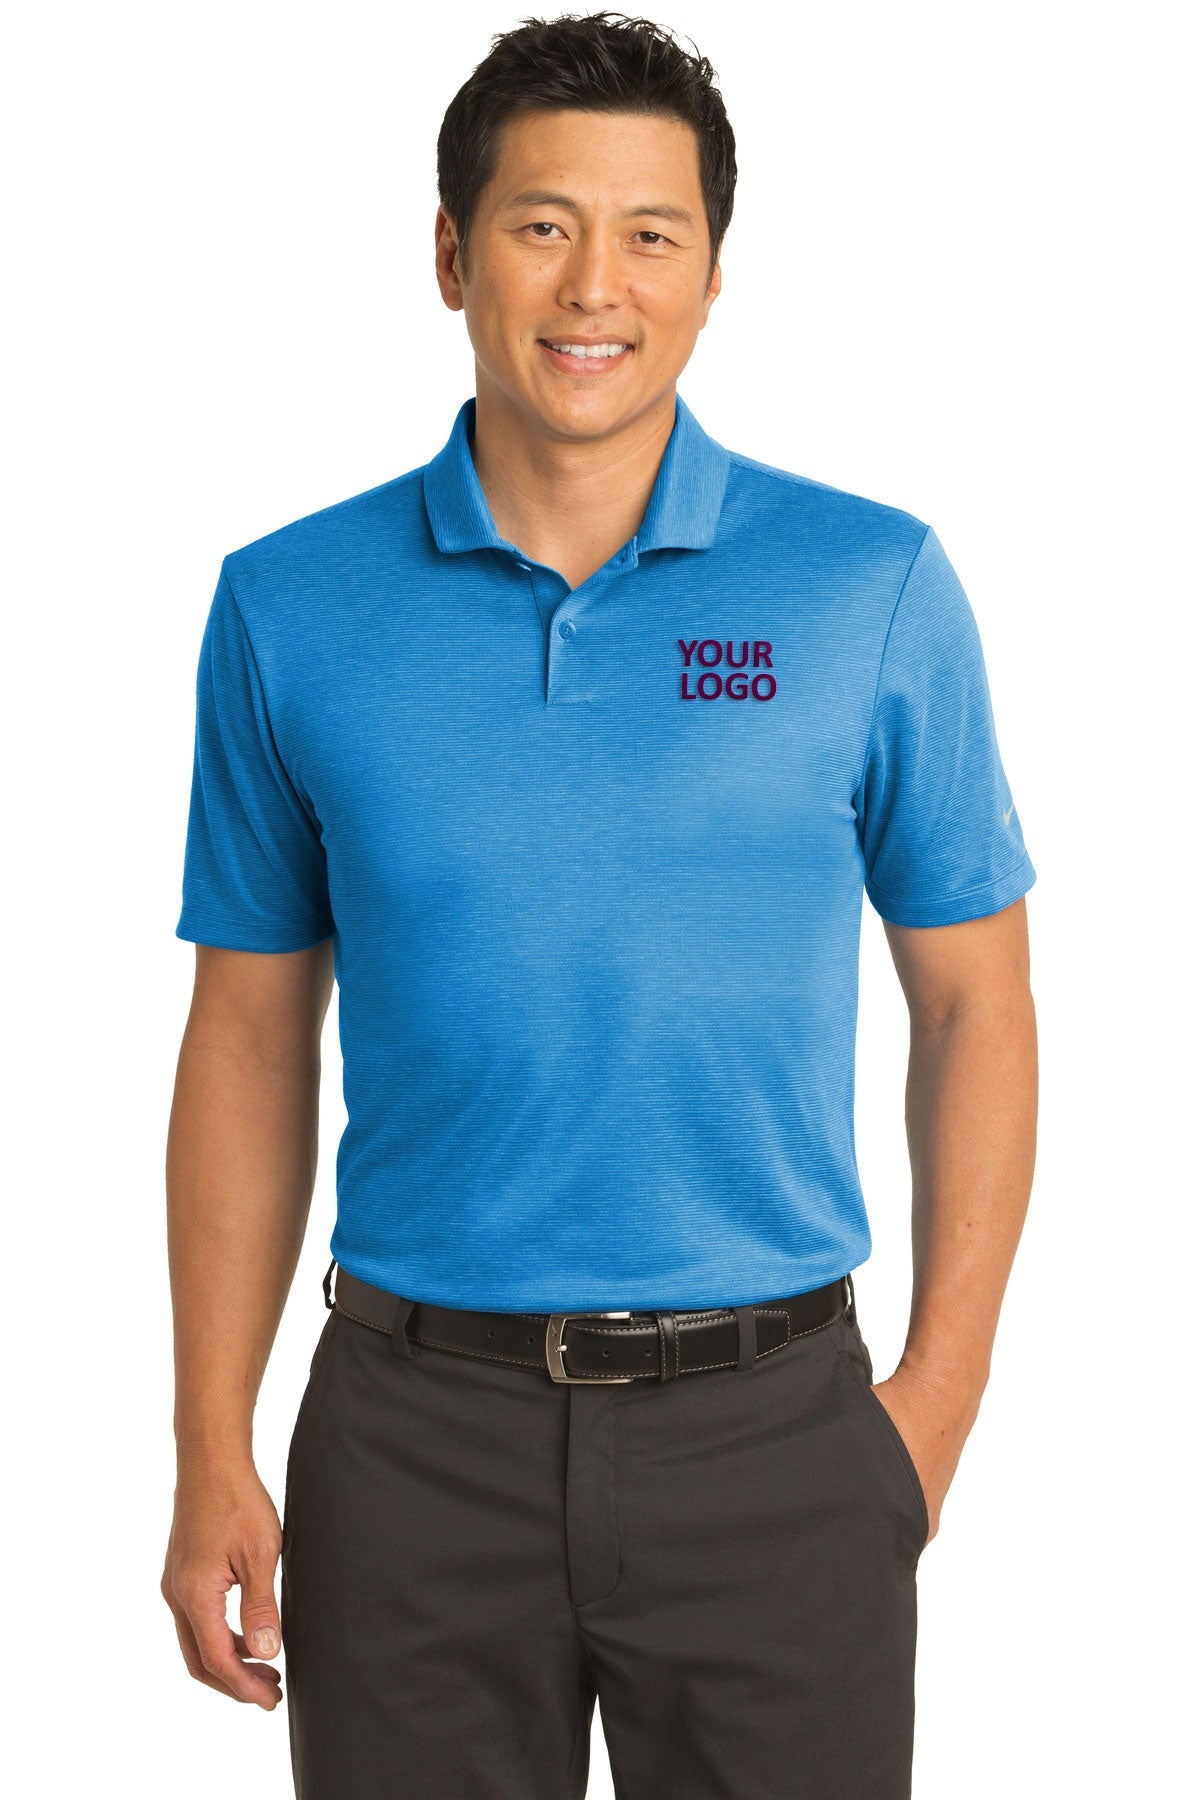 Nike Photo Blue NKAA1854 polo shirts brand logo